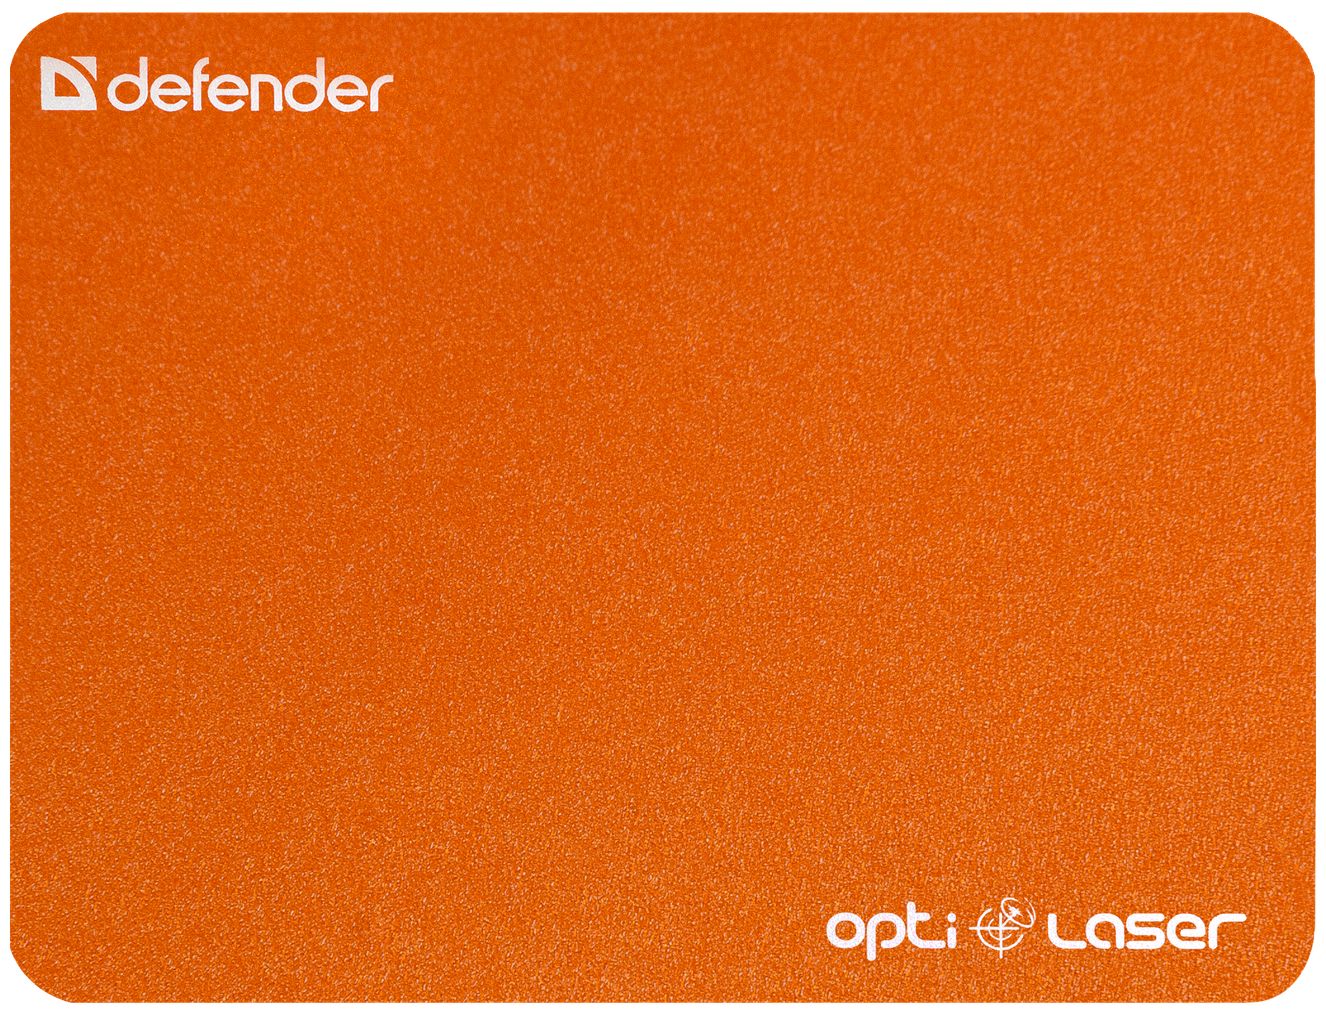 Defender Silver Laser 50410 defender 1 mm 310